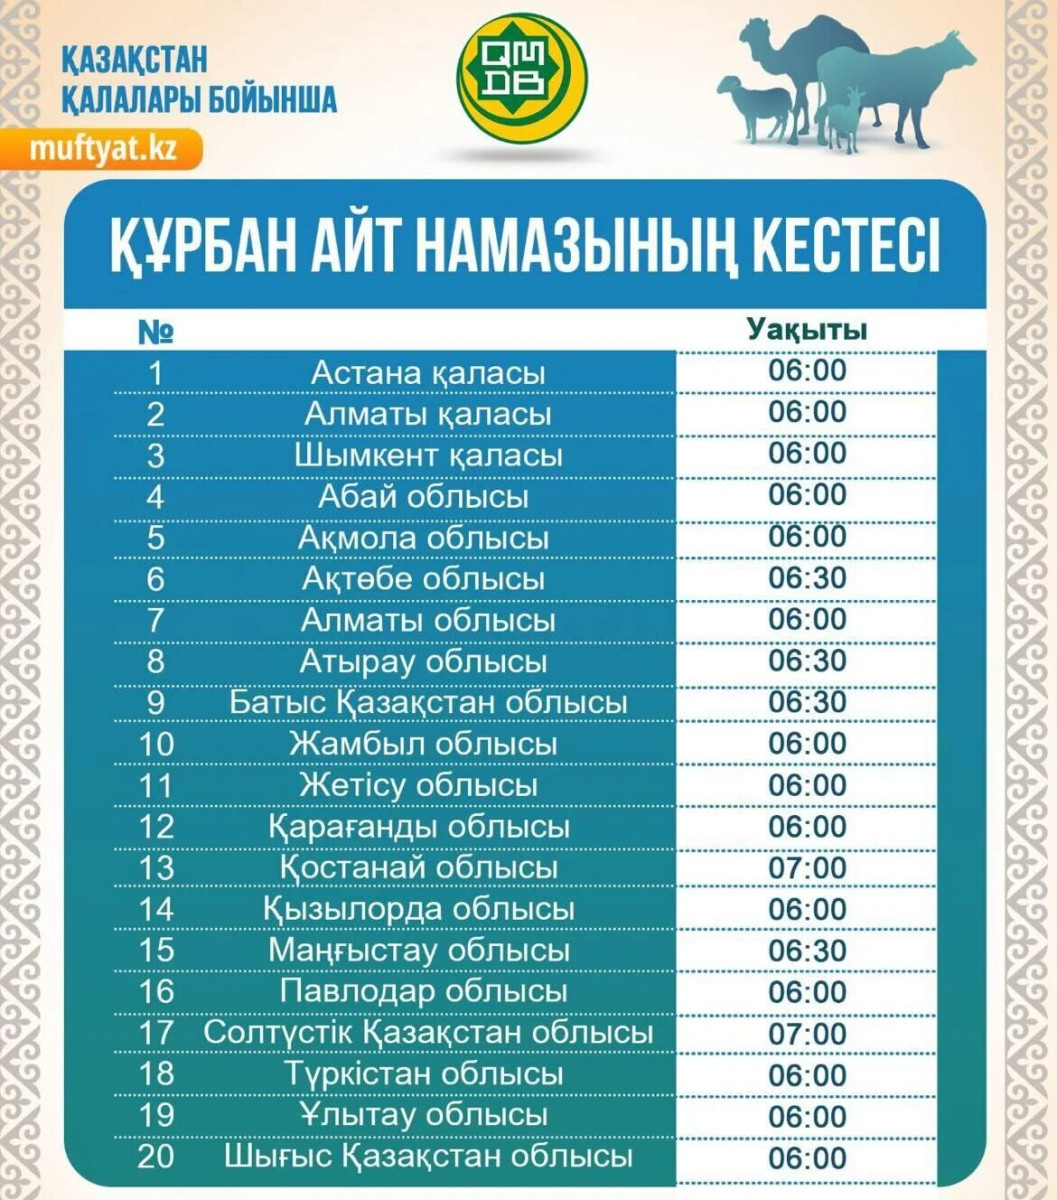 Определено время праздничного намаза на Курбан айт в городах Казахстана